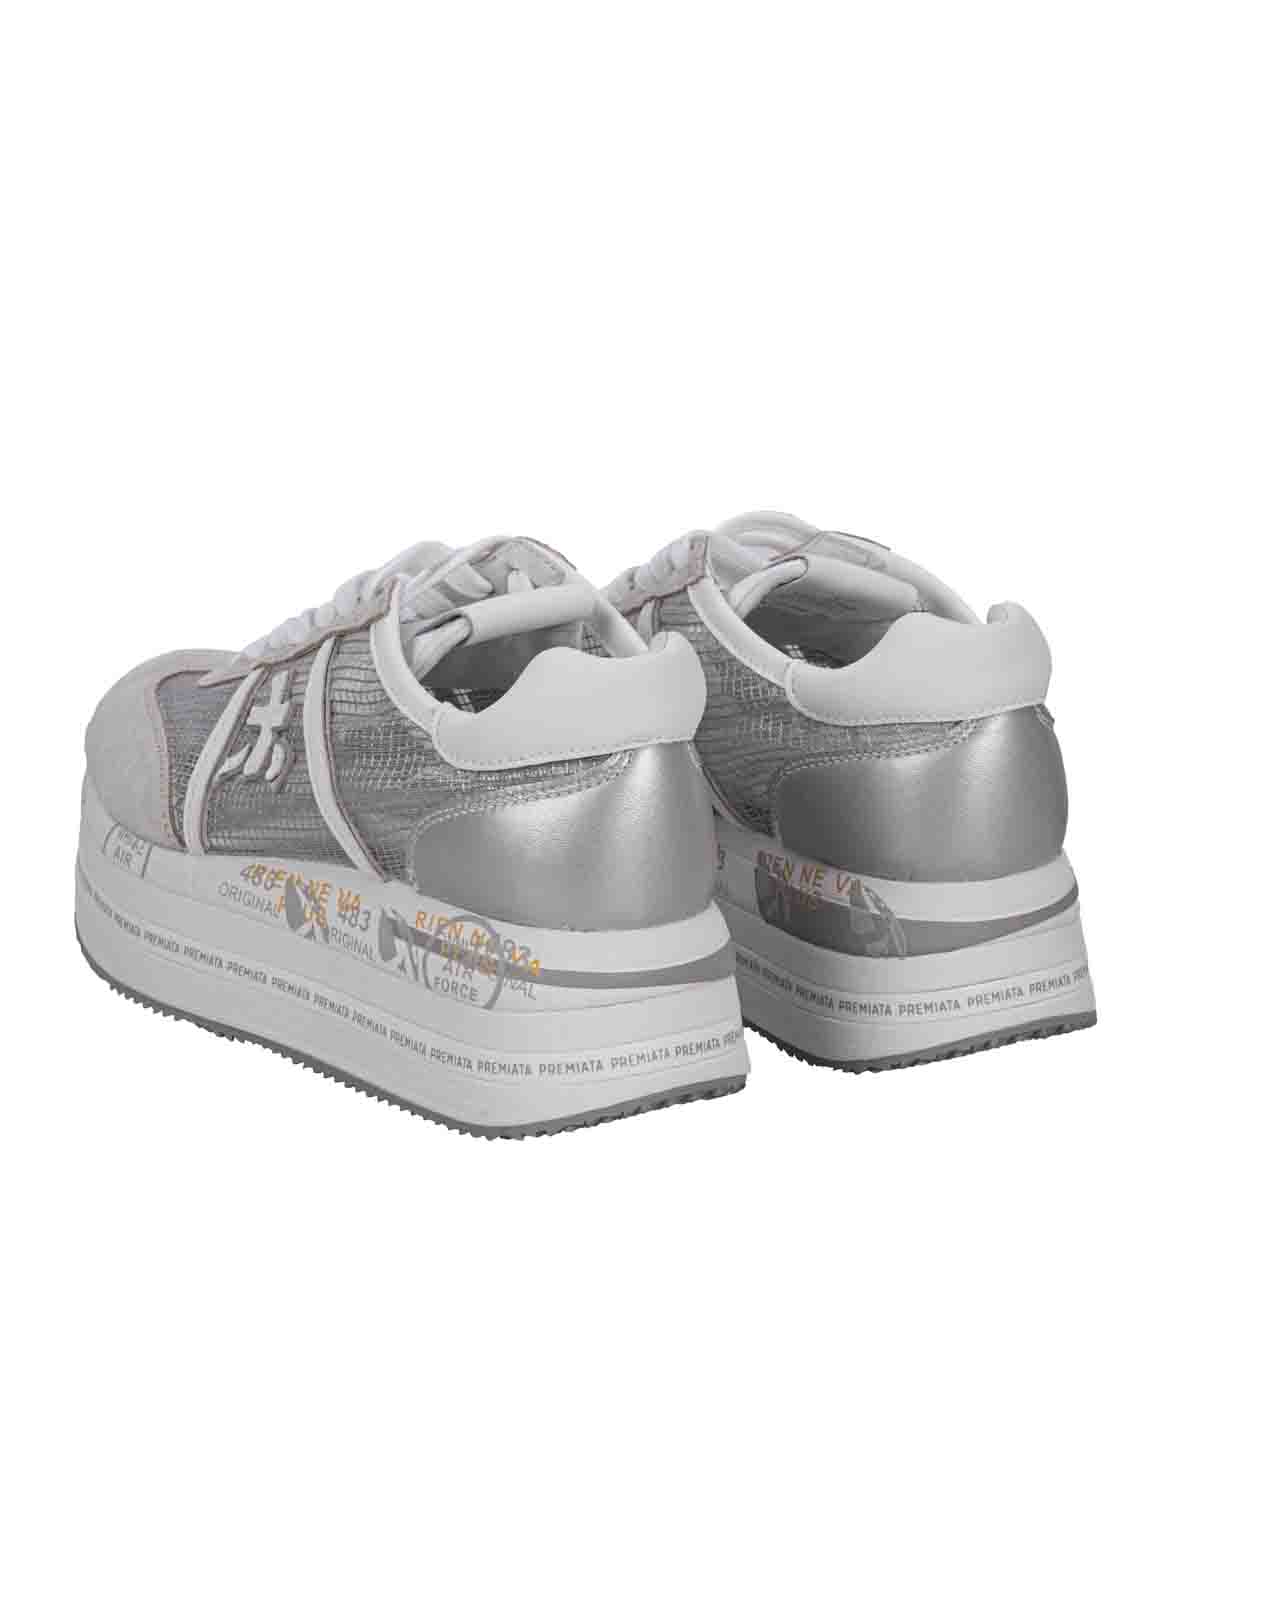 Shop Premiata Flat Shoes Grey